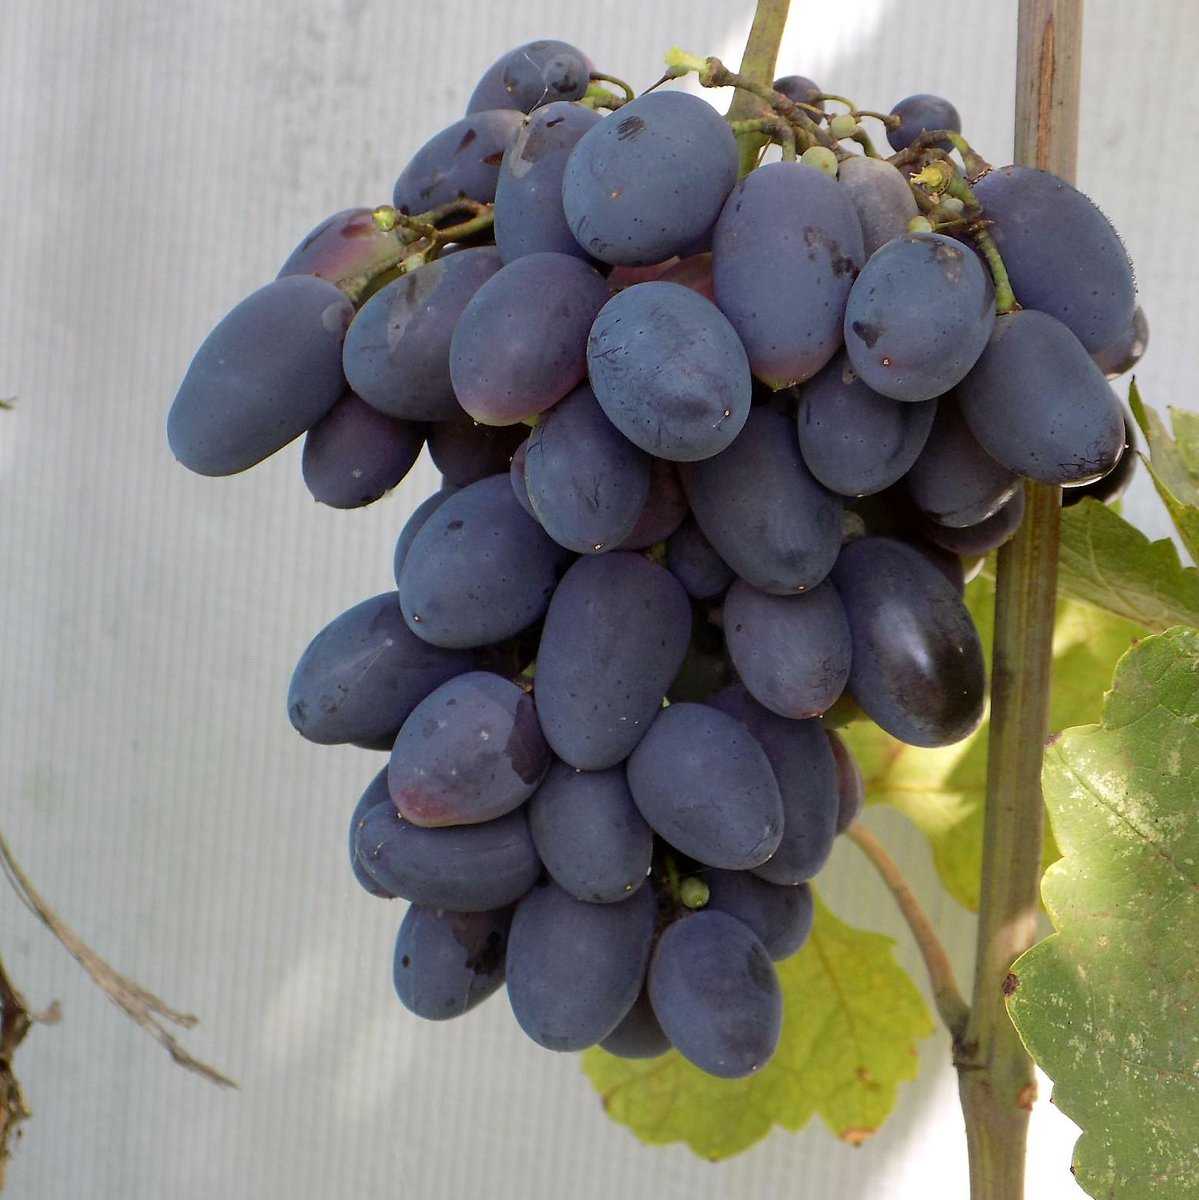 Описание и фото ультраранних сортов винограда